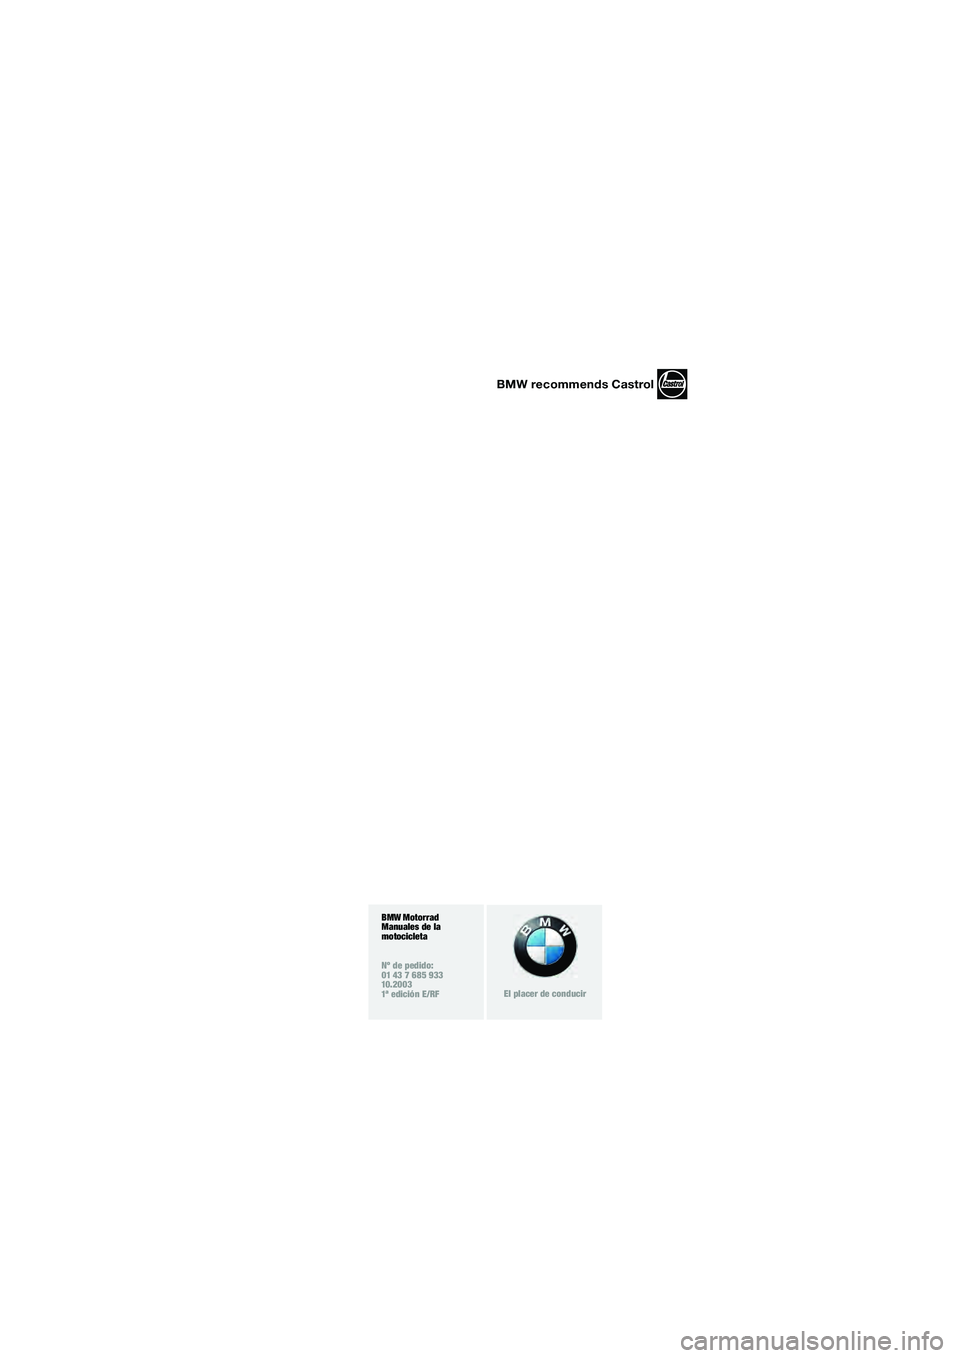 BMW MOTORRAD F 650 GS DAKAR 2003  Manual de instrucciones (in Spanish) 1
BMW recommends Castrol
BMW Motorrad
Manuales de la 
motocicleta
Nº de pedido:
01 43 7 685 933
10.2003
1ª edición E/RF
El placer de conducir
10R13bke4.book  Seite 3  Montag, 22. September 2003  4: